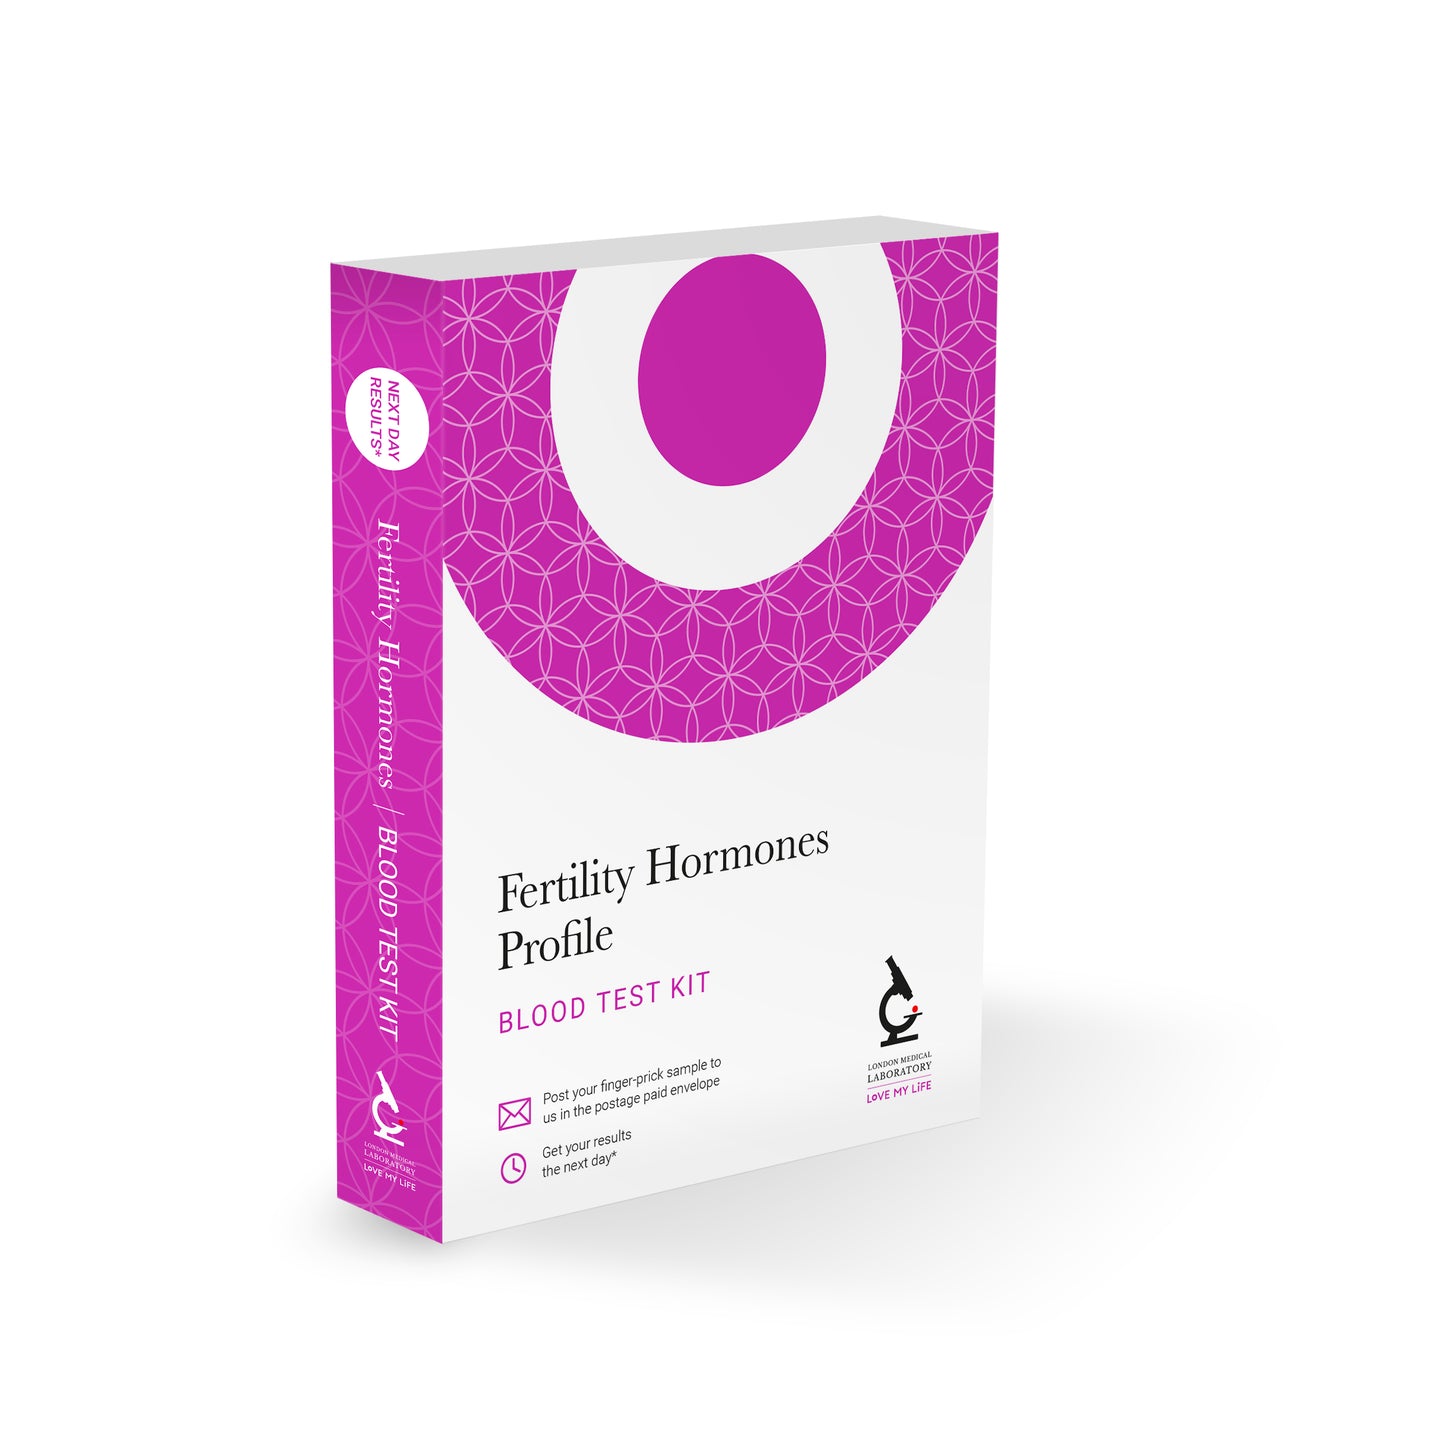 Fertility Hormones Profile